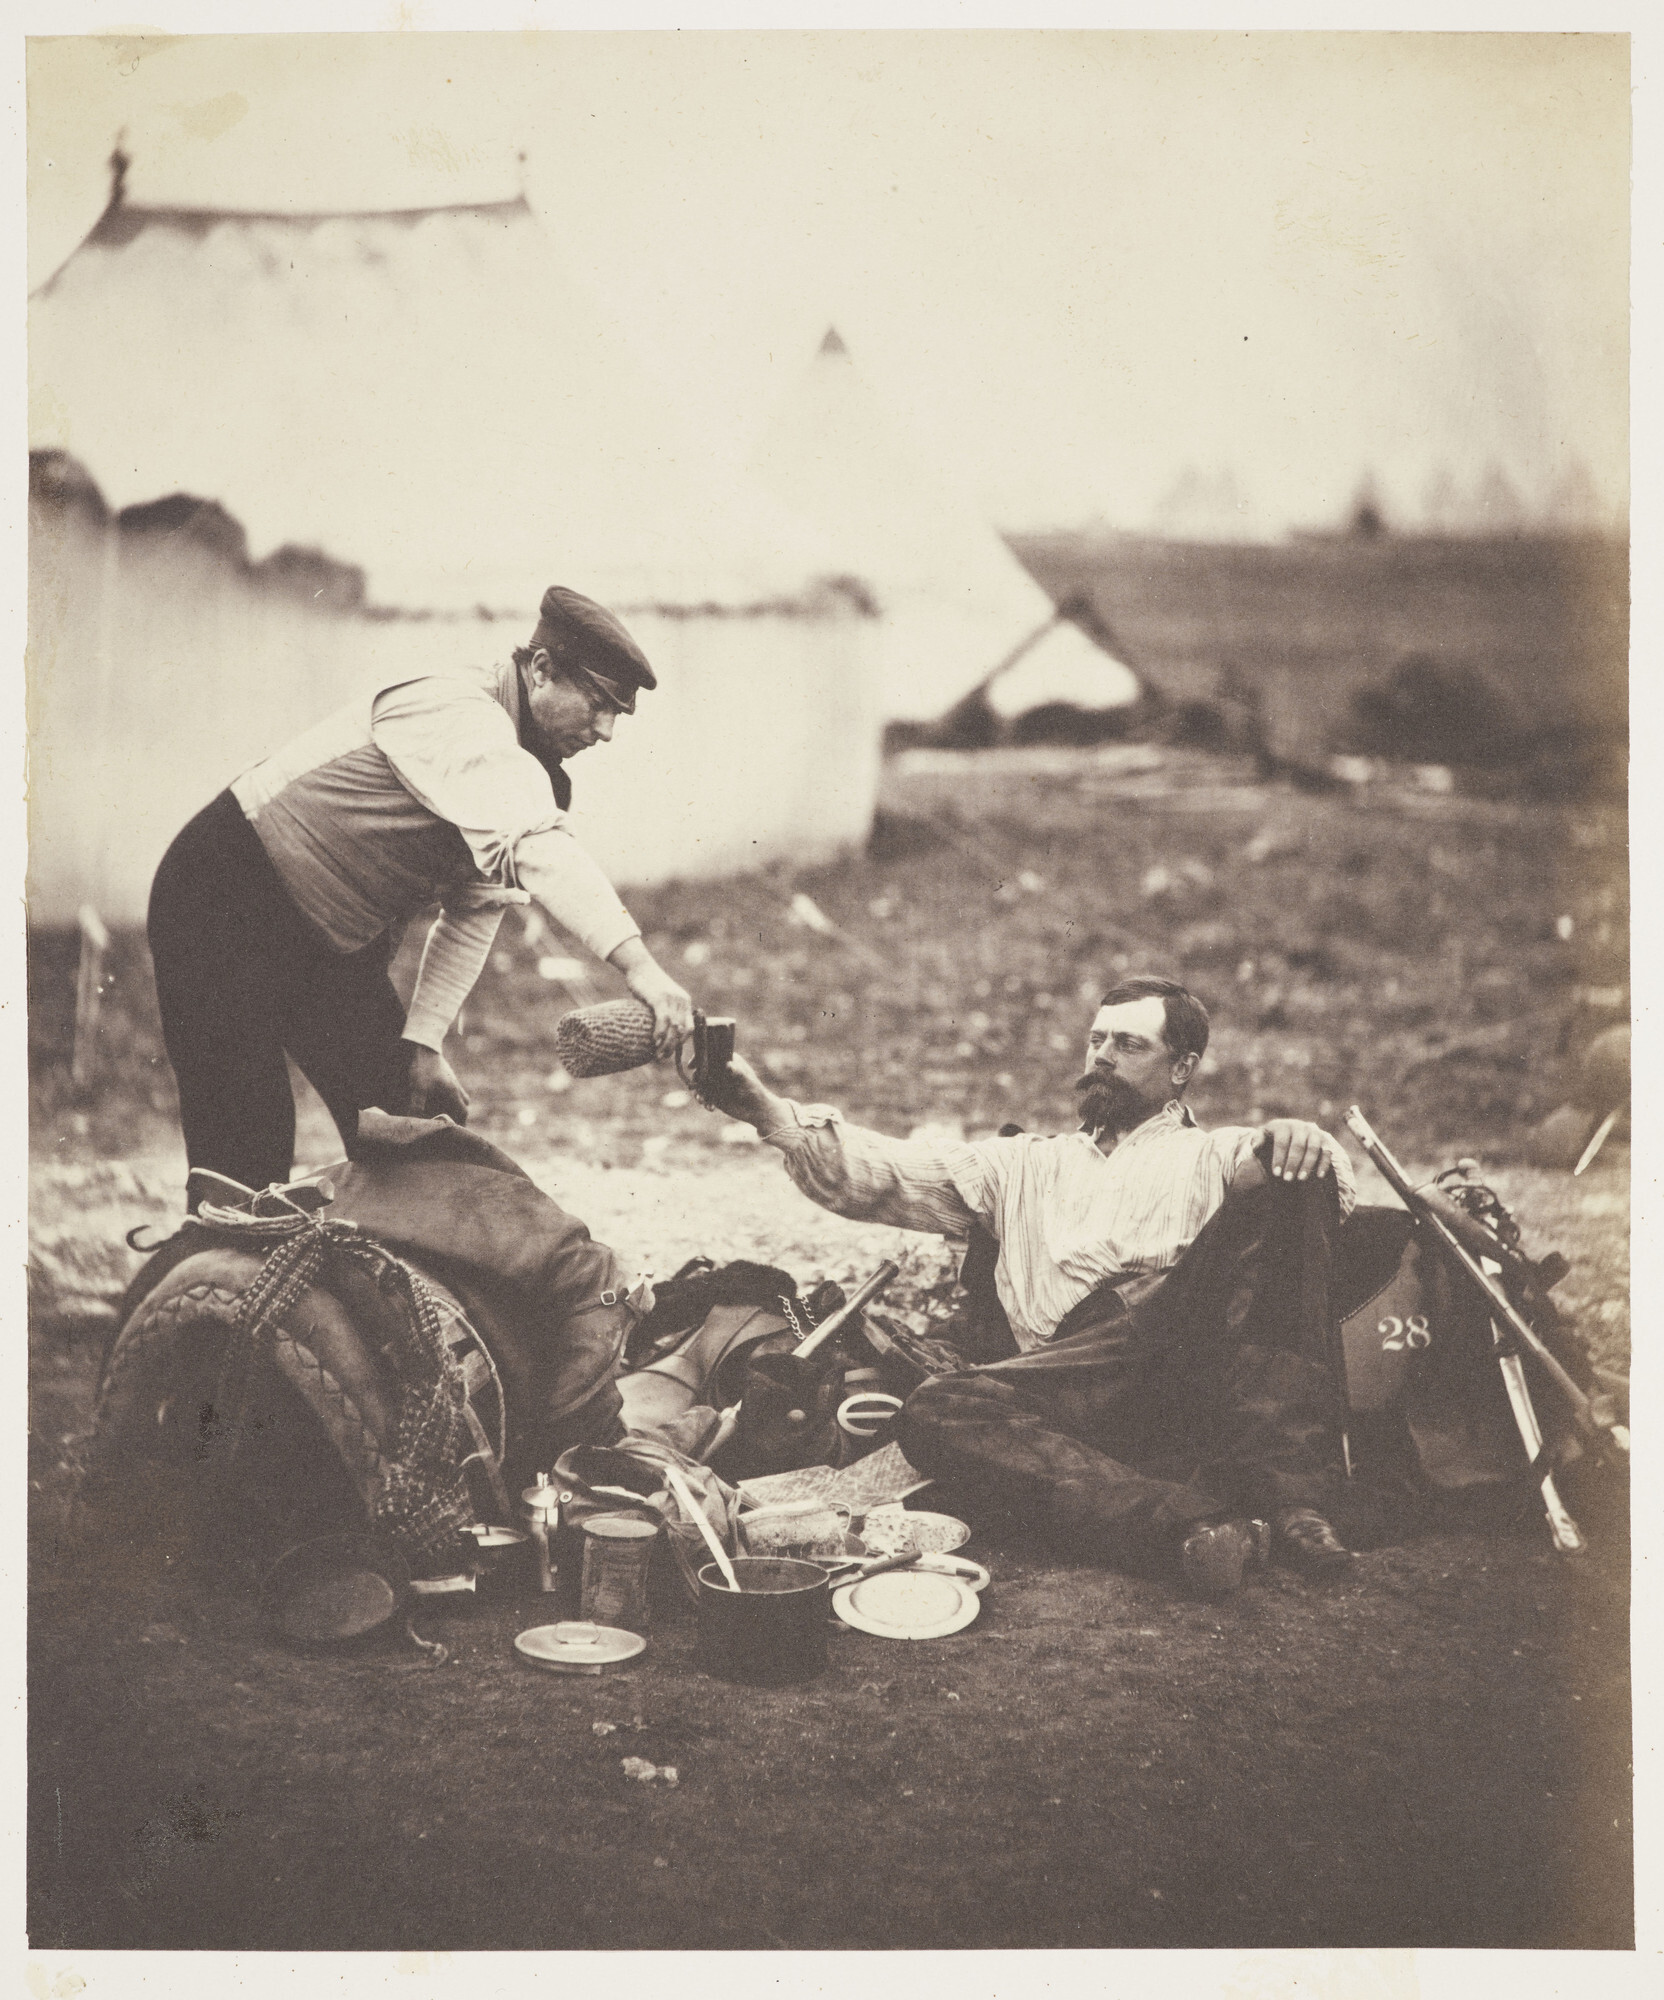 Майор Холливелл в конце трудного дня, 1855. Фотограф Роджер Фентон